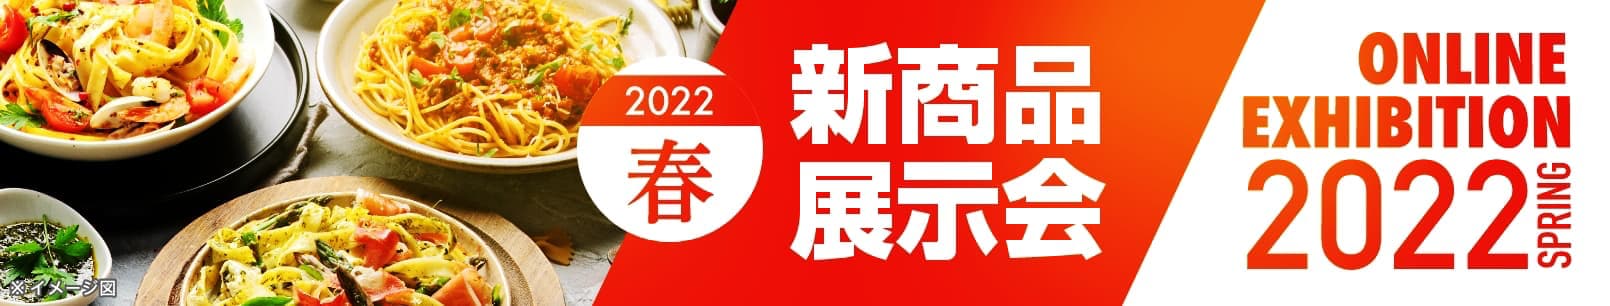 日清製粉ウェルナ 親商品展示会 2022年春